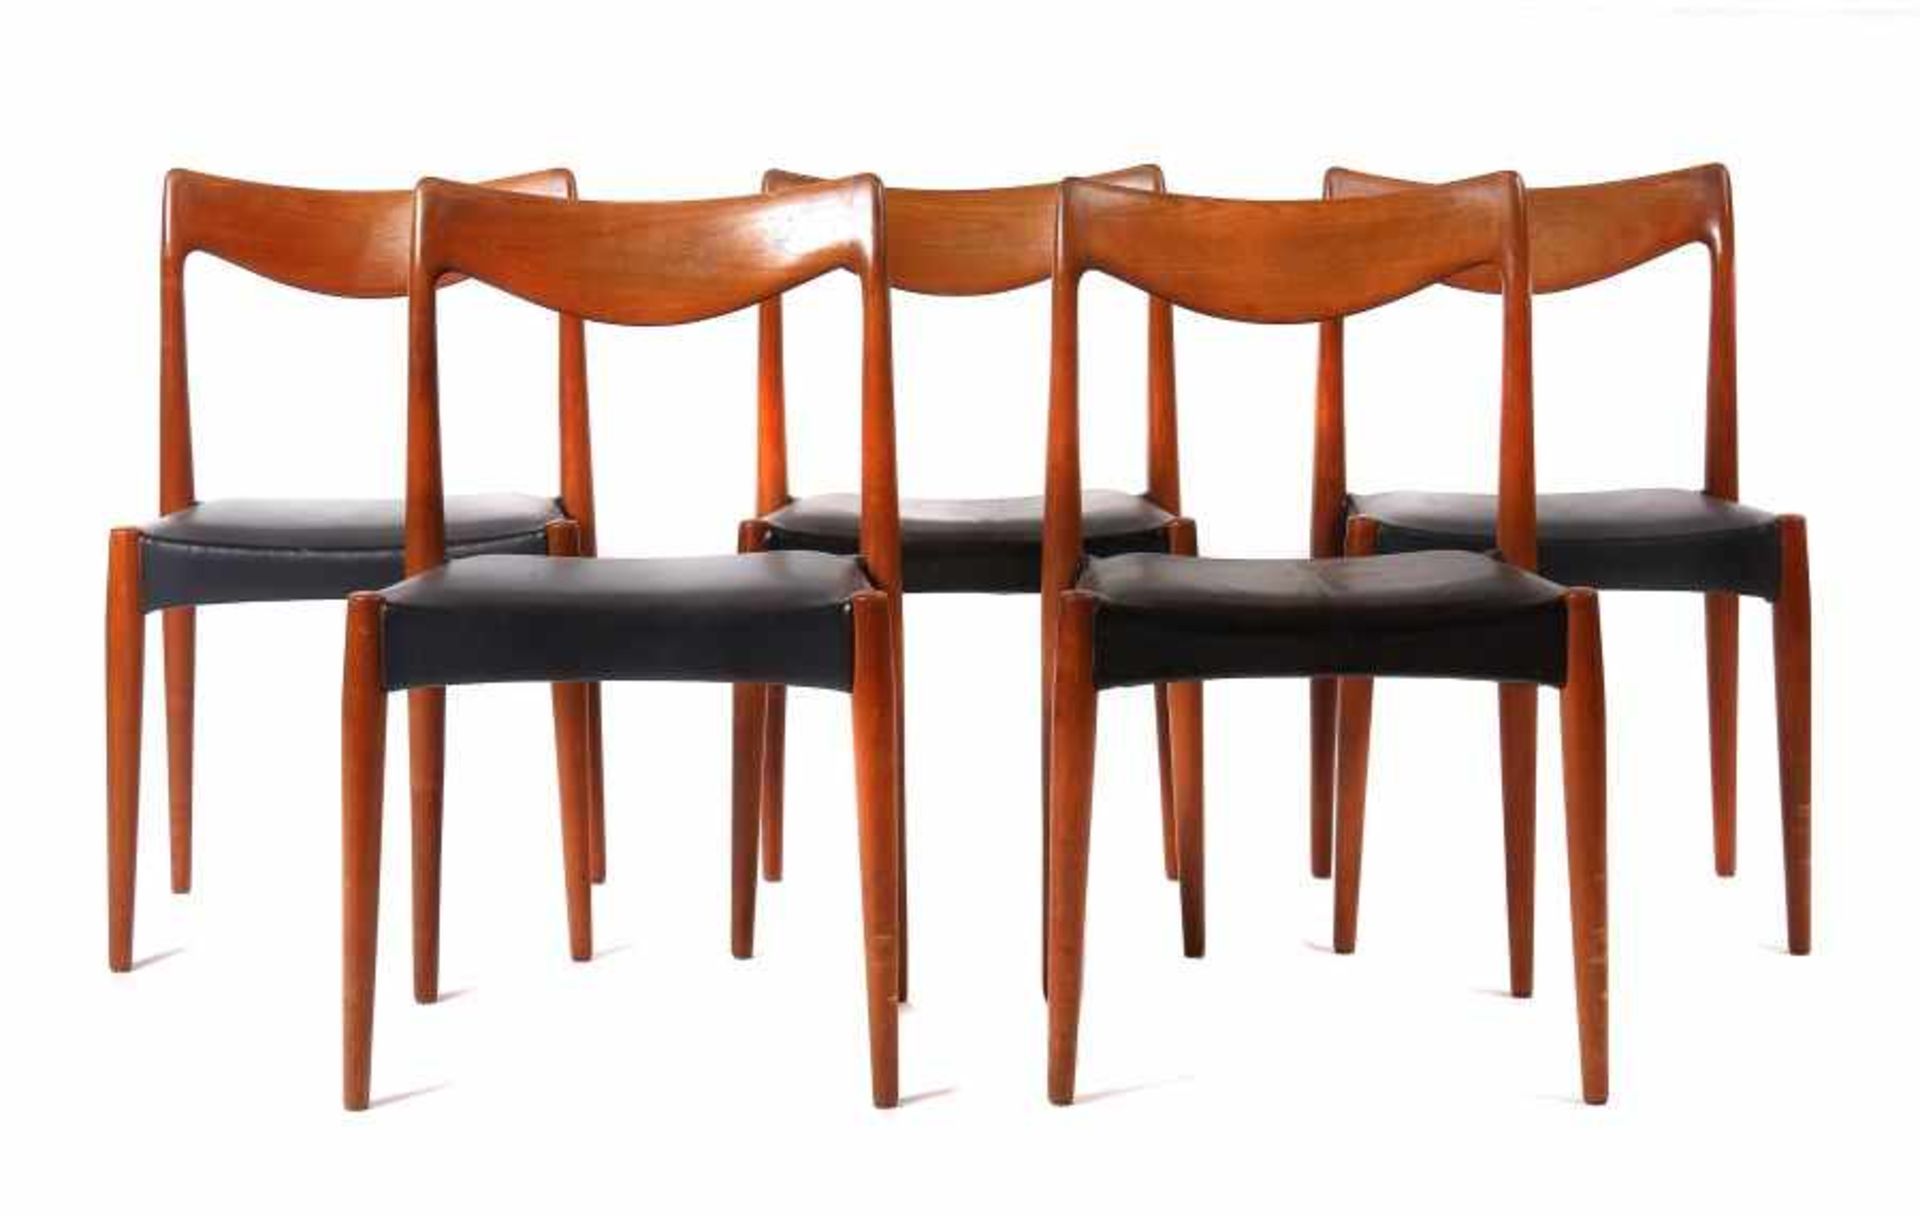 5 Stühle Norwegen, 1960er Jahre, Ausführung: Gustav Bahus, Konstruktion aus Teak, organisch geformte